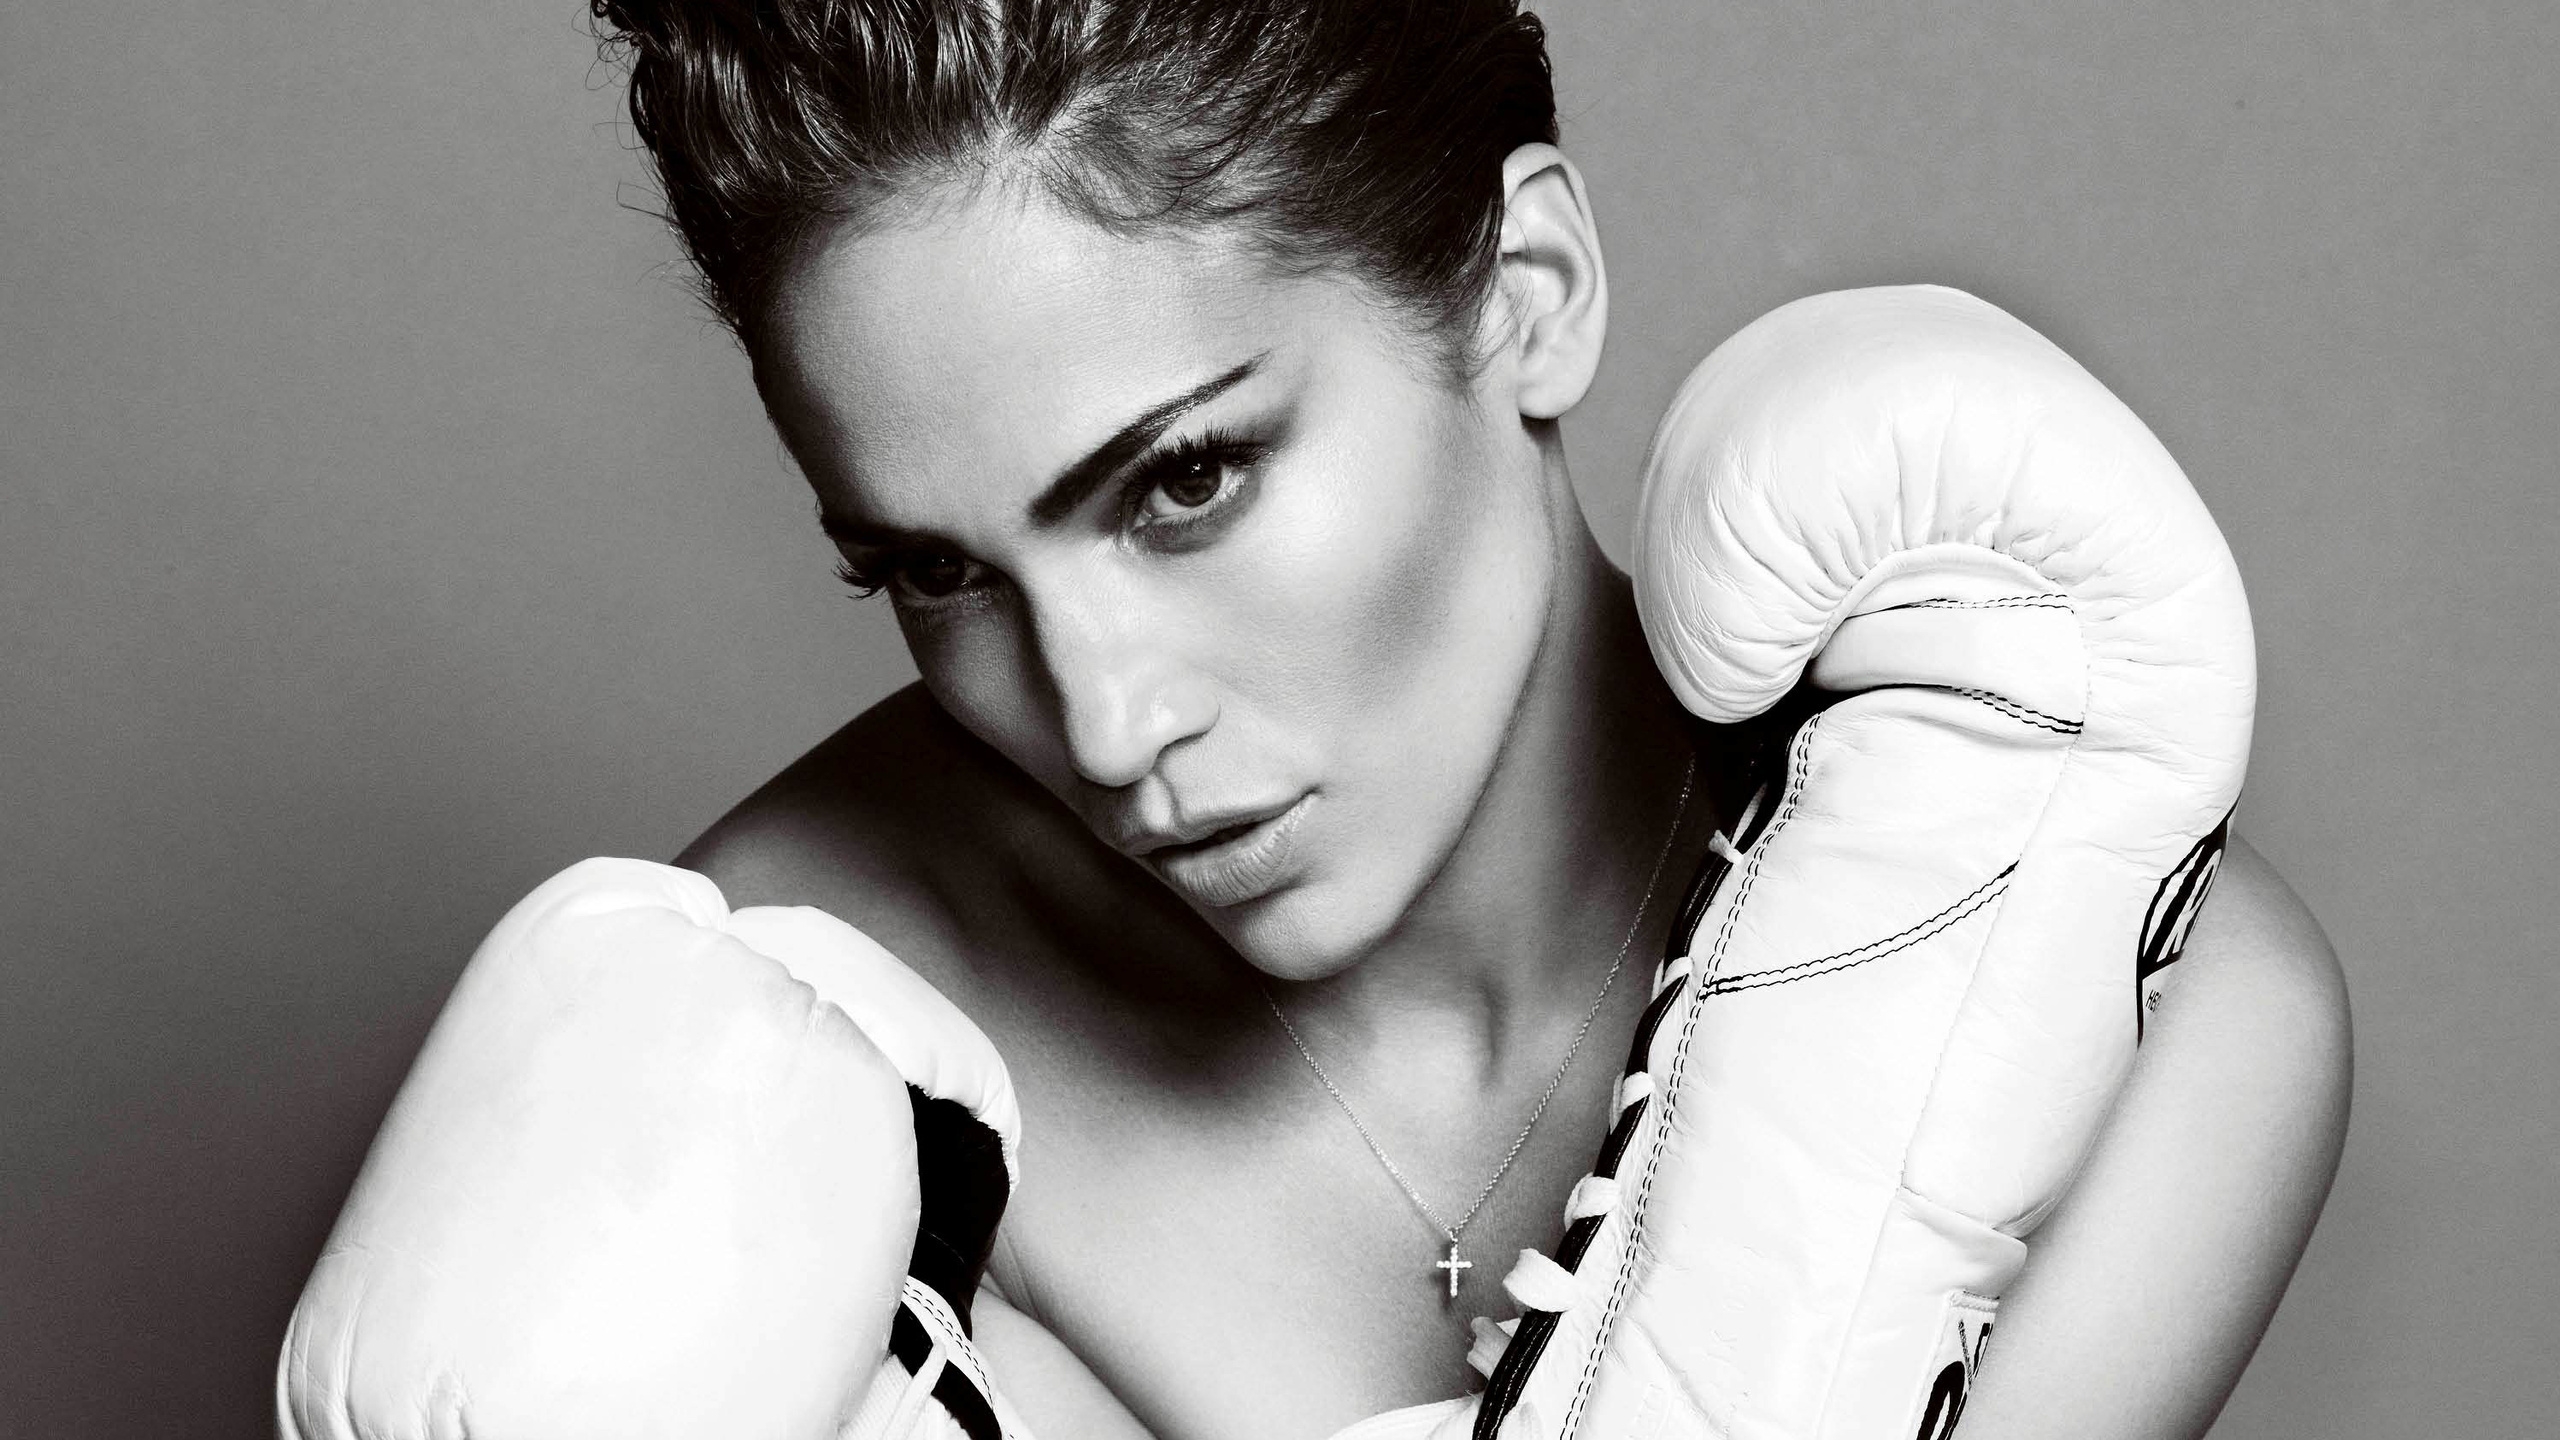 Jennifer Lopez Boxing Gloves for 2560x1440 HDTV resolution